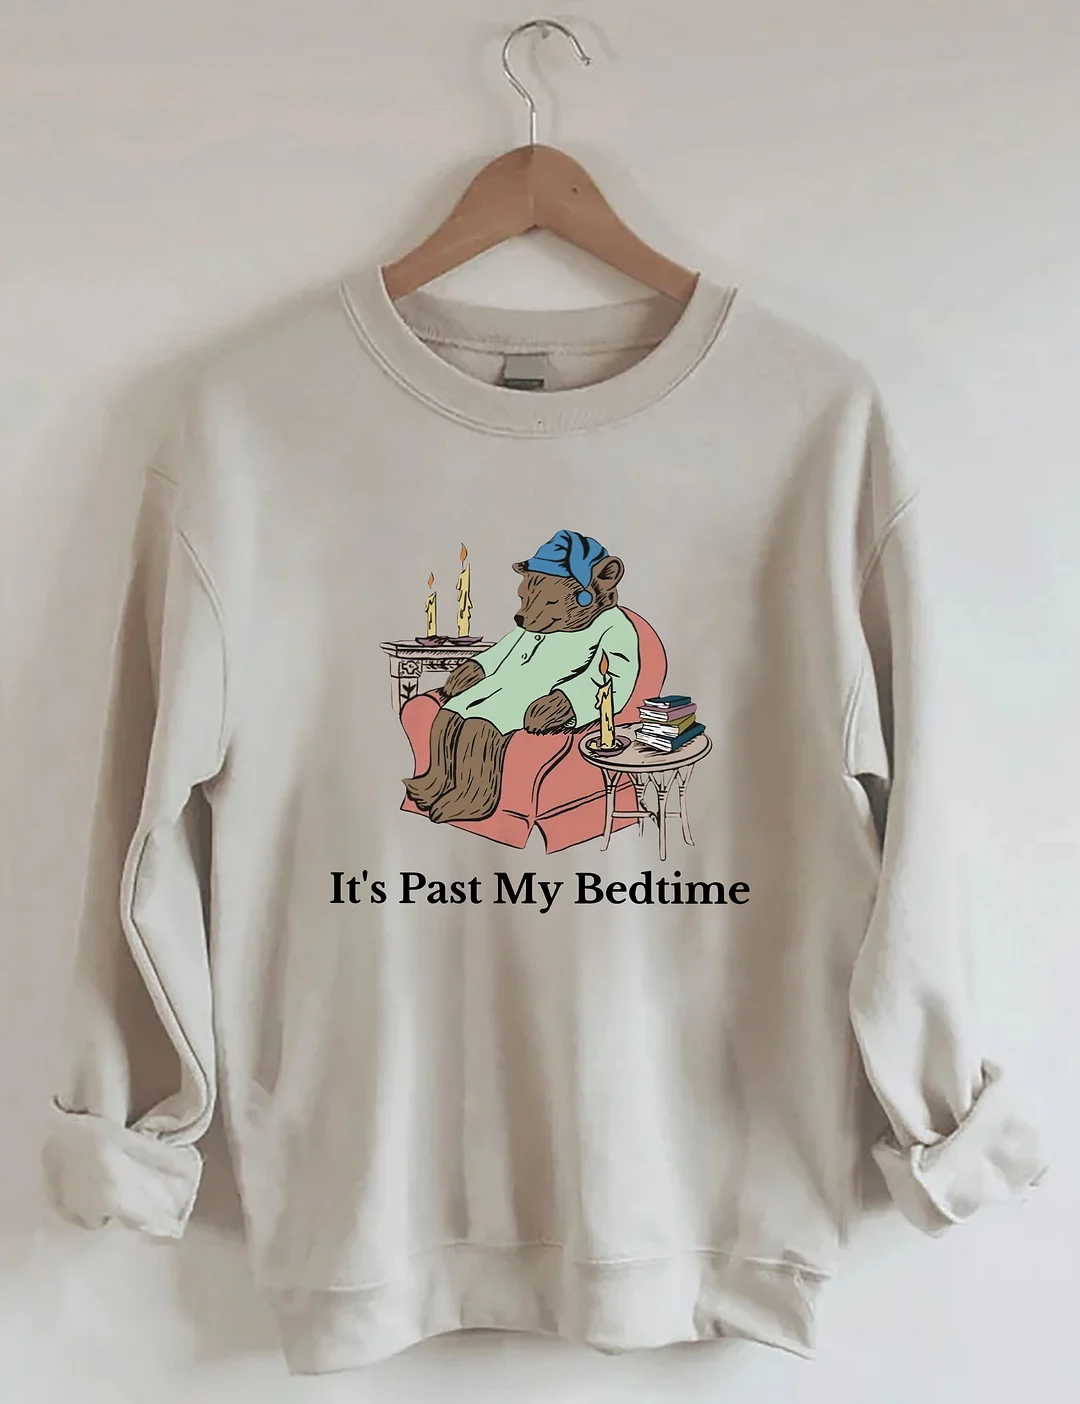 It’s Past My Bedtime Sweatshirt